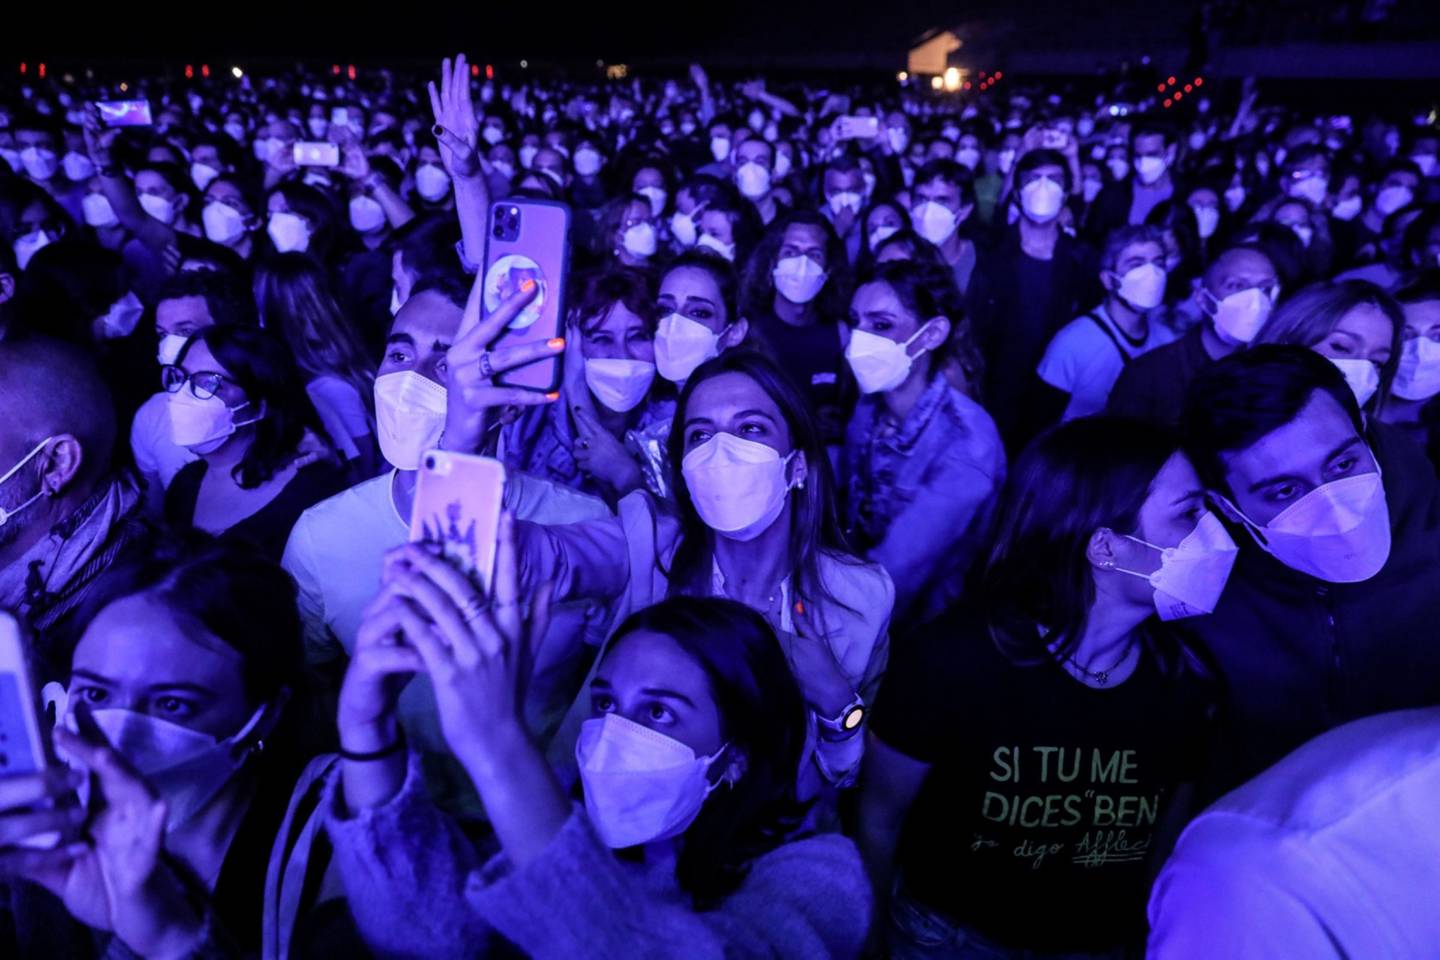 Barcelona, 27 de marzo. Alrededor de 5.000 fans se reúnen para un concierto en el estadio Sant Jordi de la ciudad española como parte de un experimento masivo que, según los organizadores, fue el mayor concierto sin distanciamiento social de la era del coronavirus. Ángel García/Bloomberg